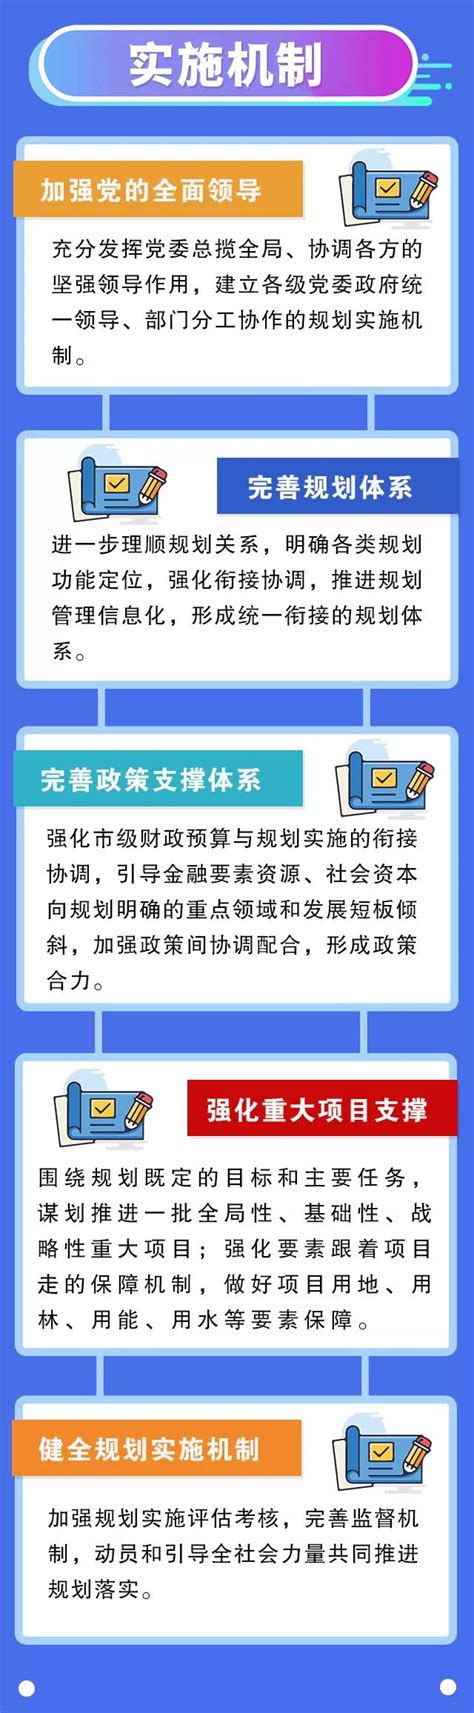 河源市人民政府网登录入口：http://www.heyuan.gov.cn/